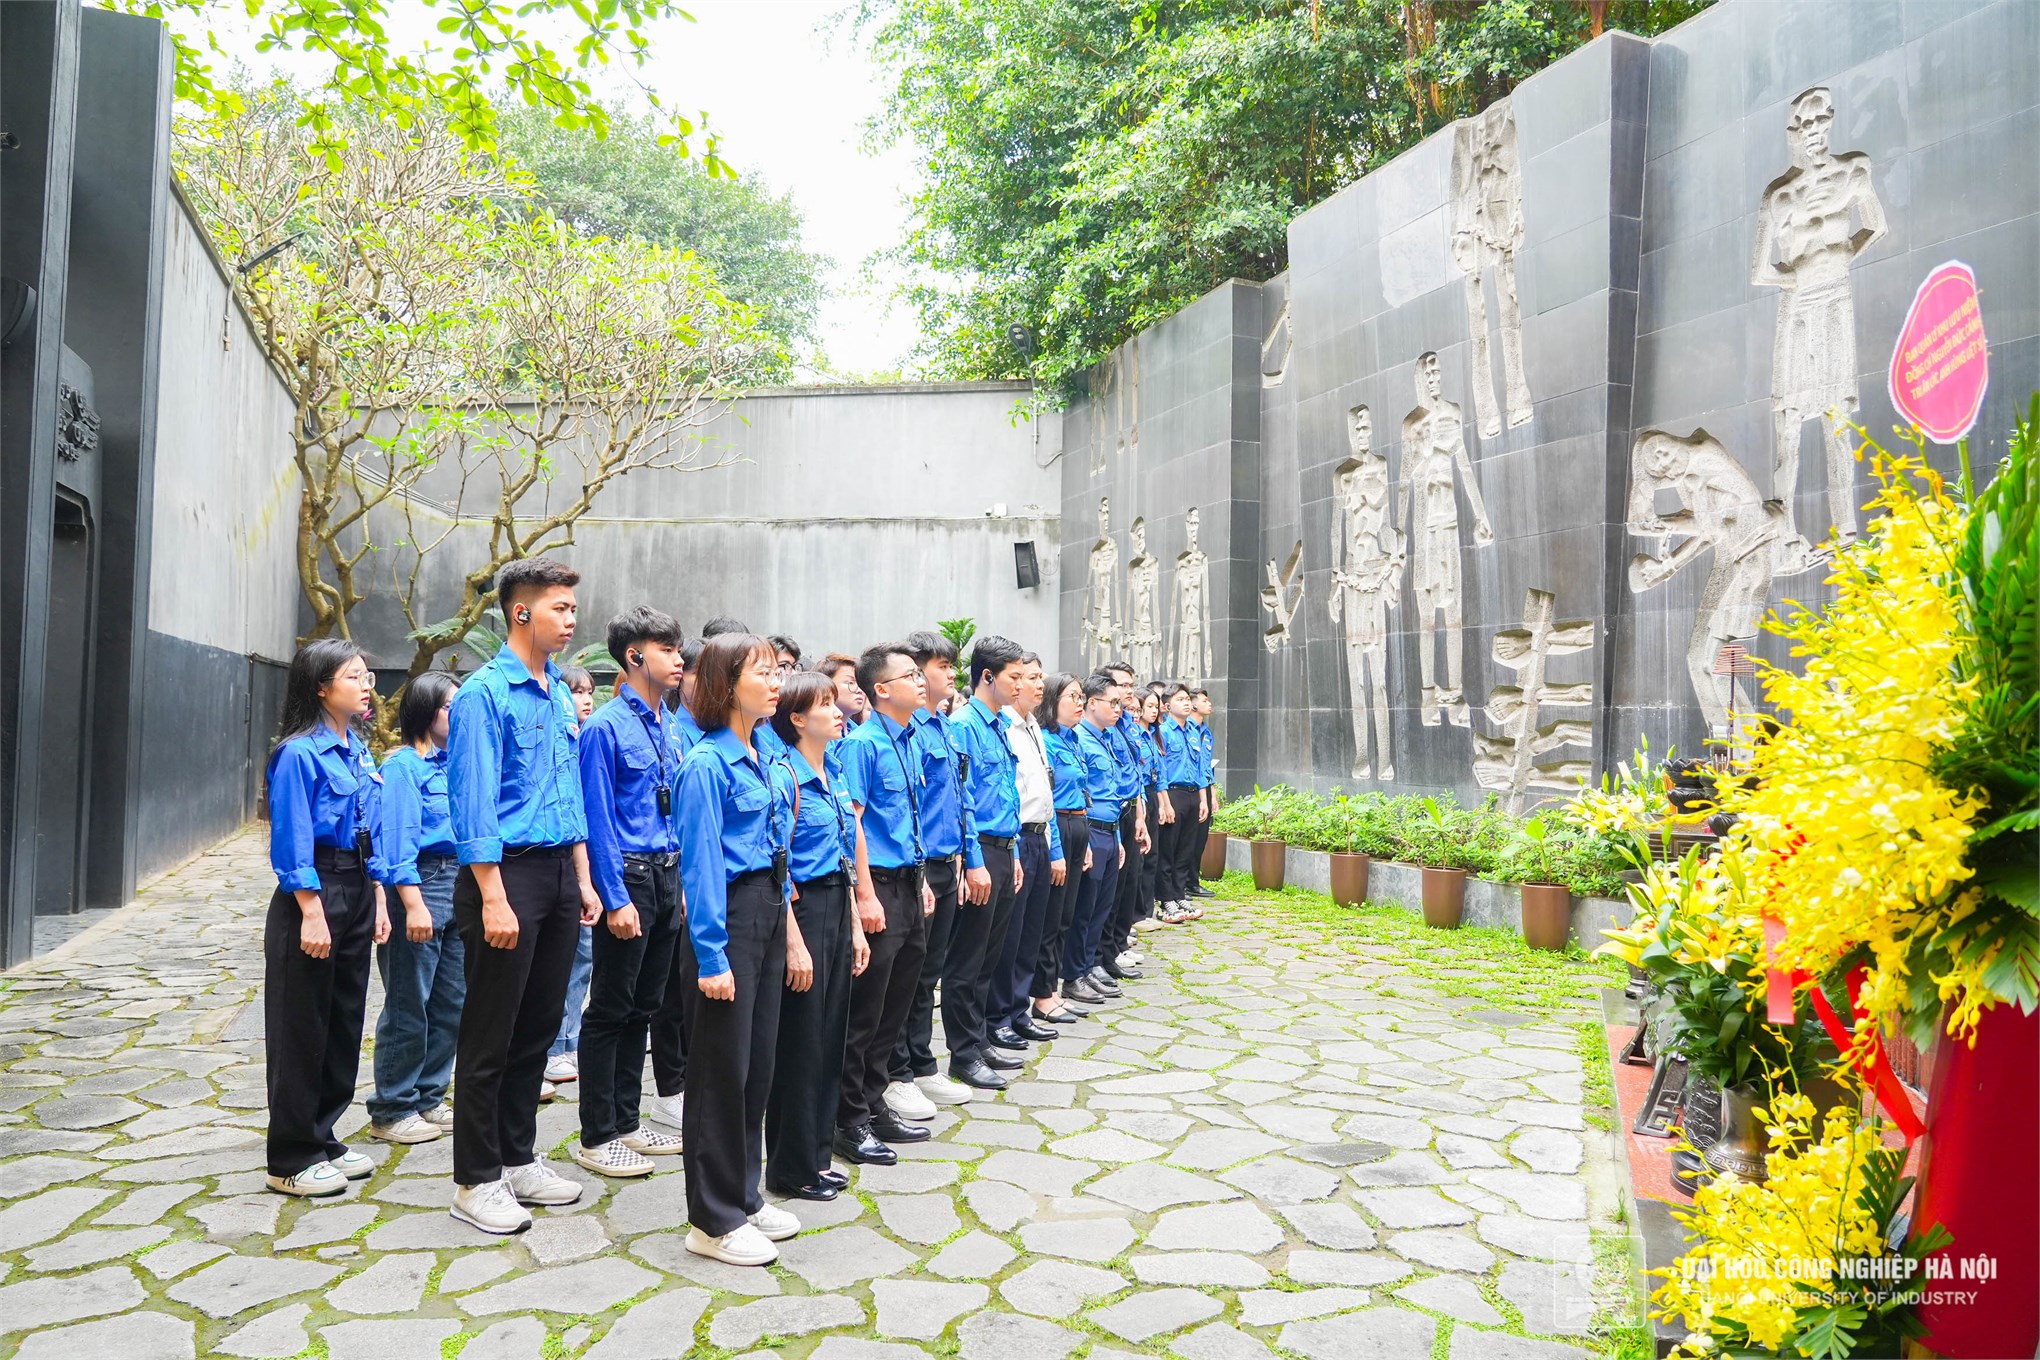 Hành trình tri ân của đoàn sinh viên tiêu biểu Đại học Công nghiệp Hà Nội 